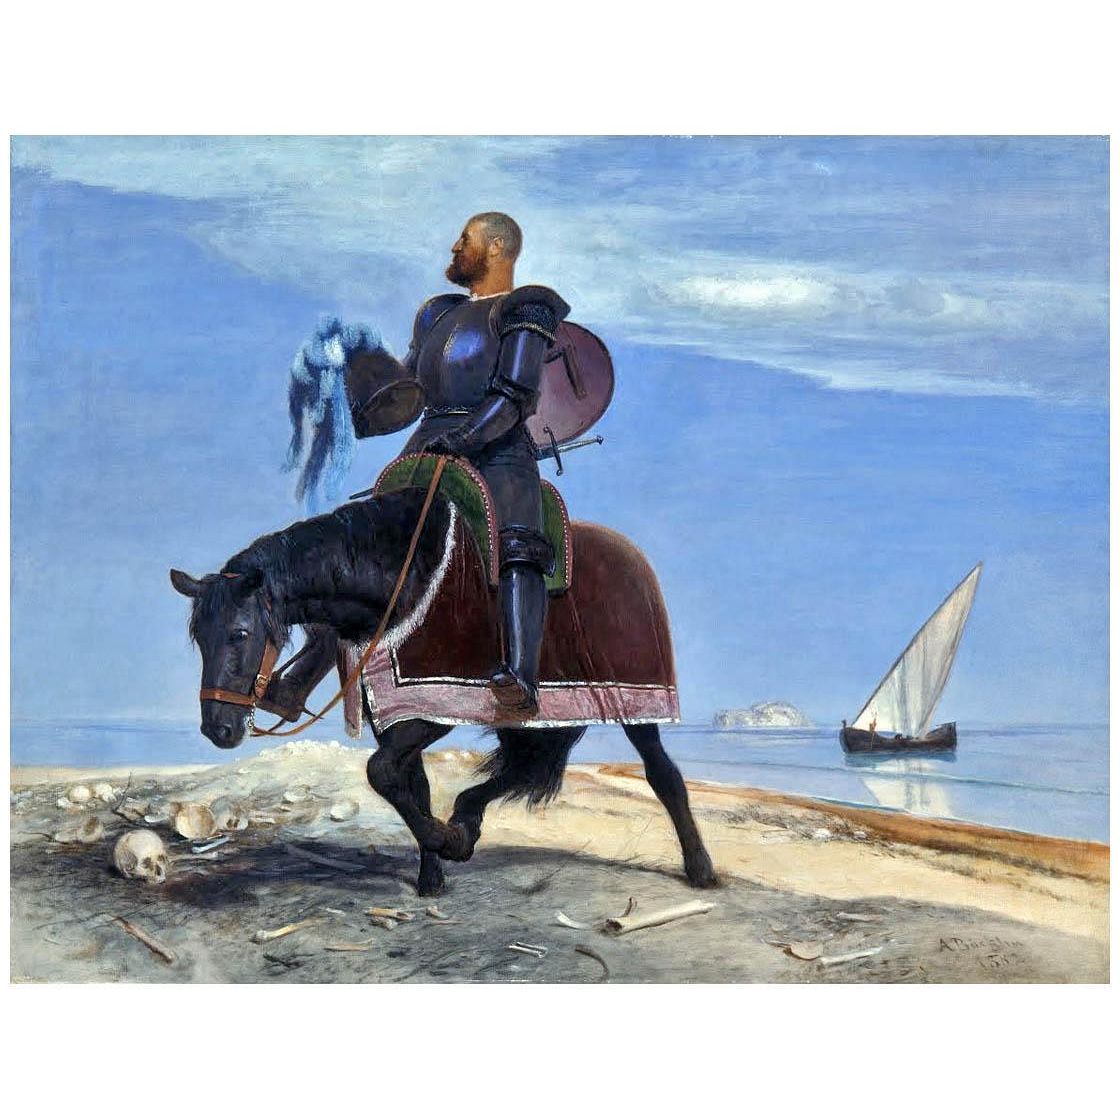 Arnold Böklin. The Adventurer. 1882. Kunsthalle Bremen